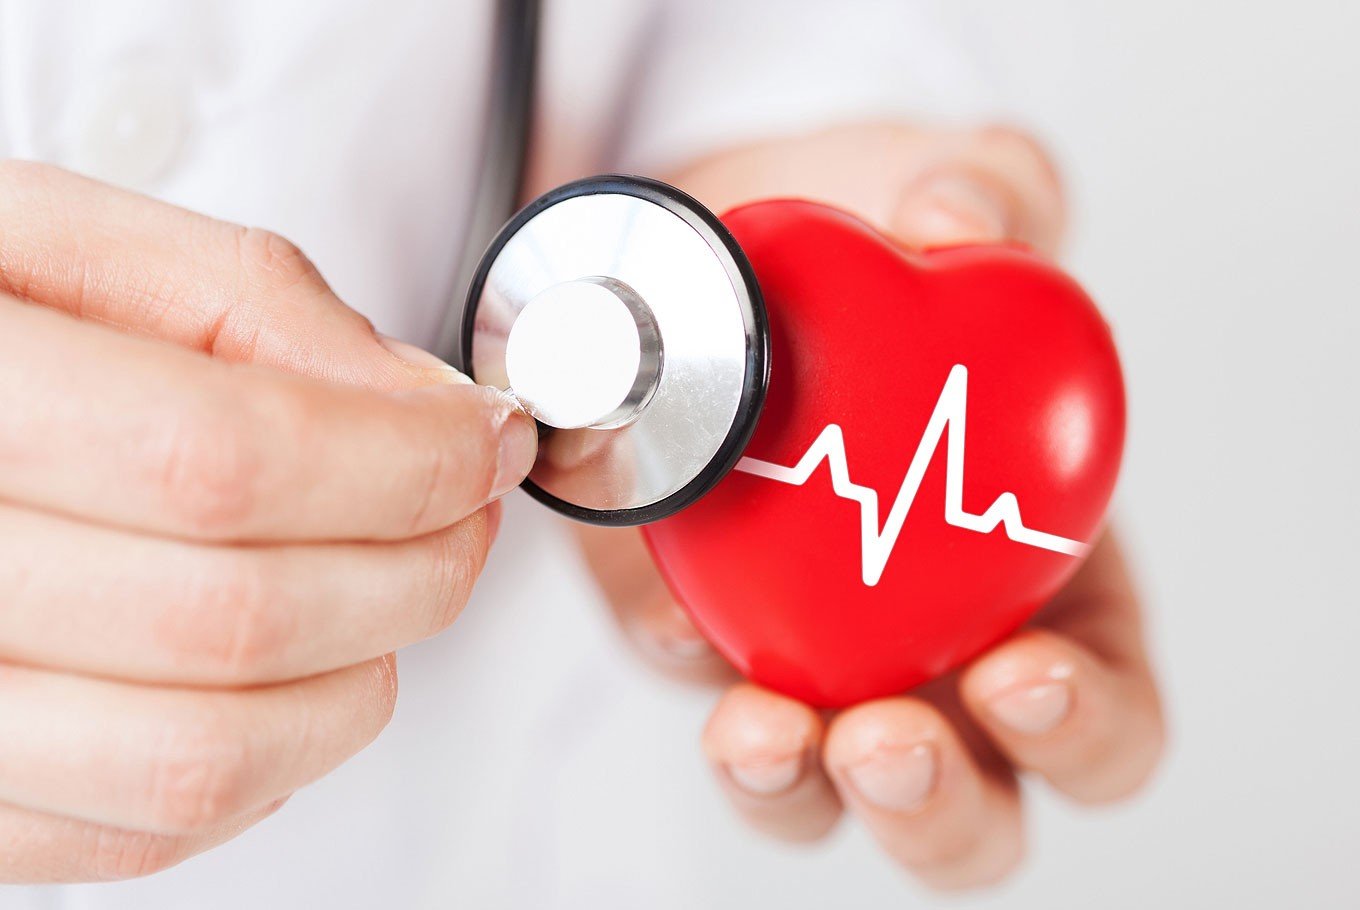 egészségügyi cikkek szívbetegségek